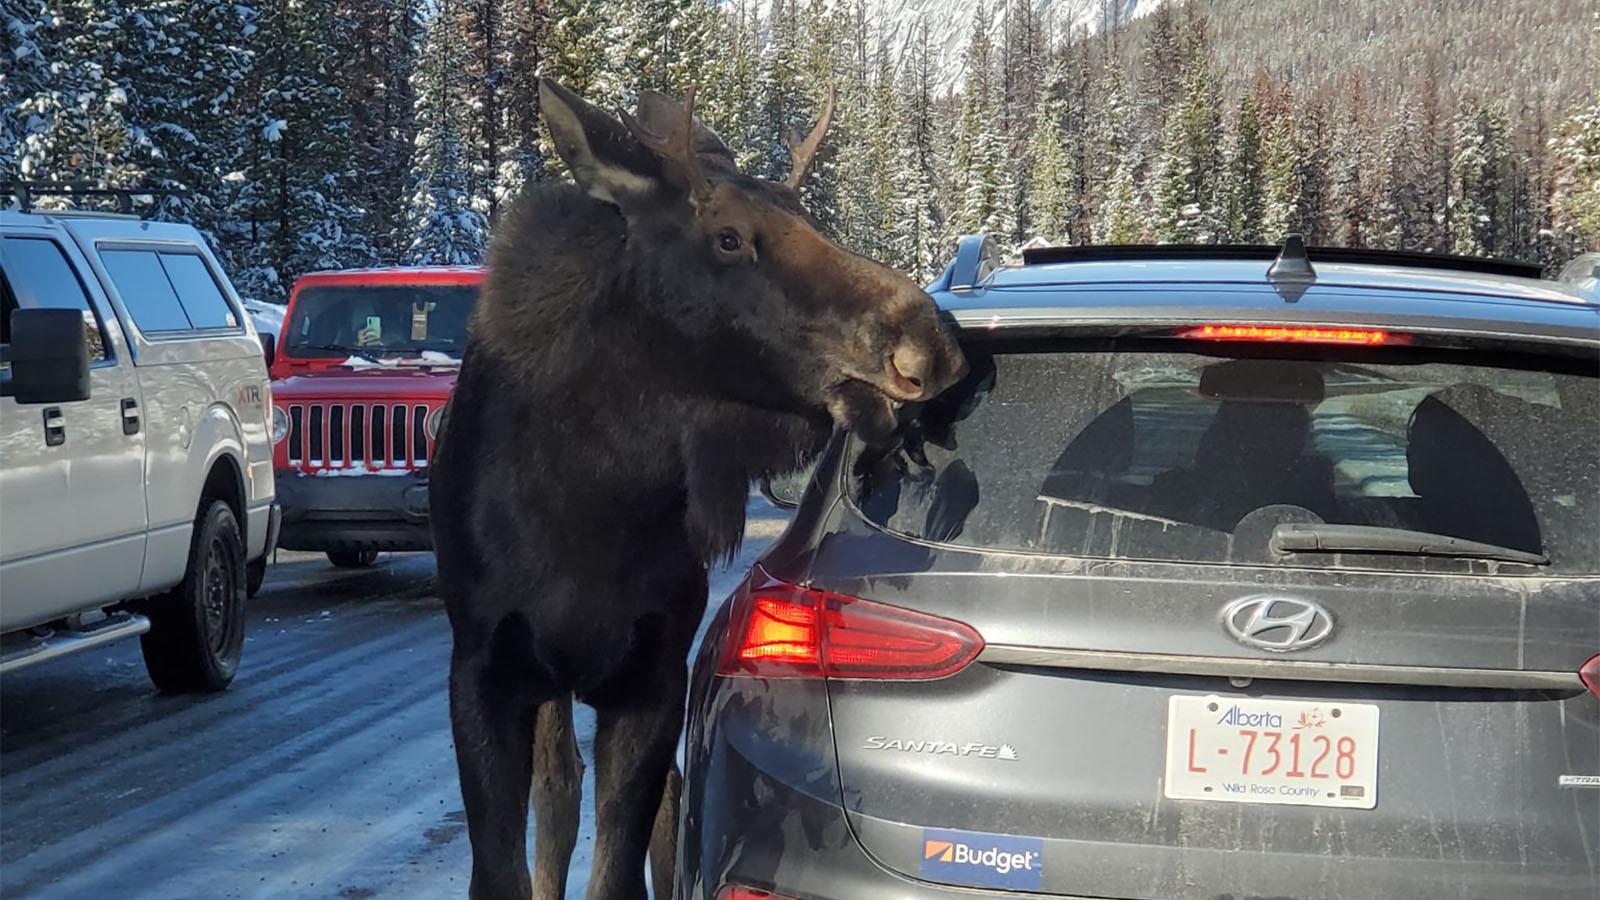 Moose licking car